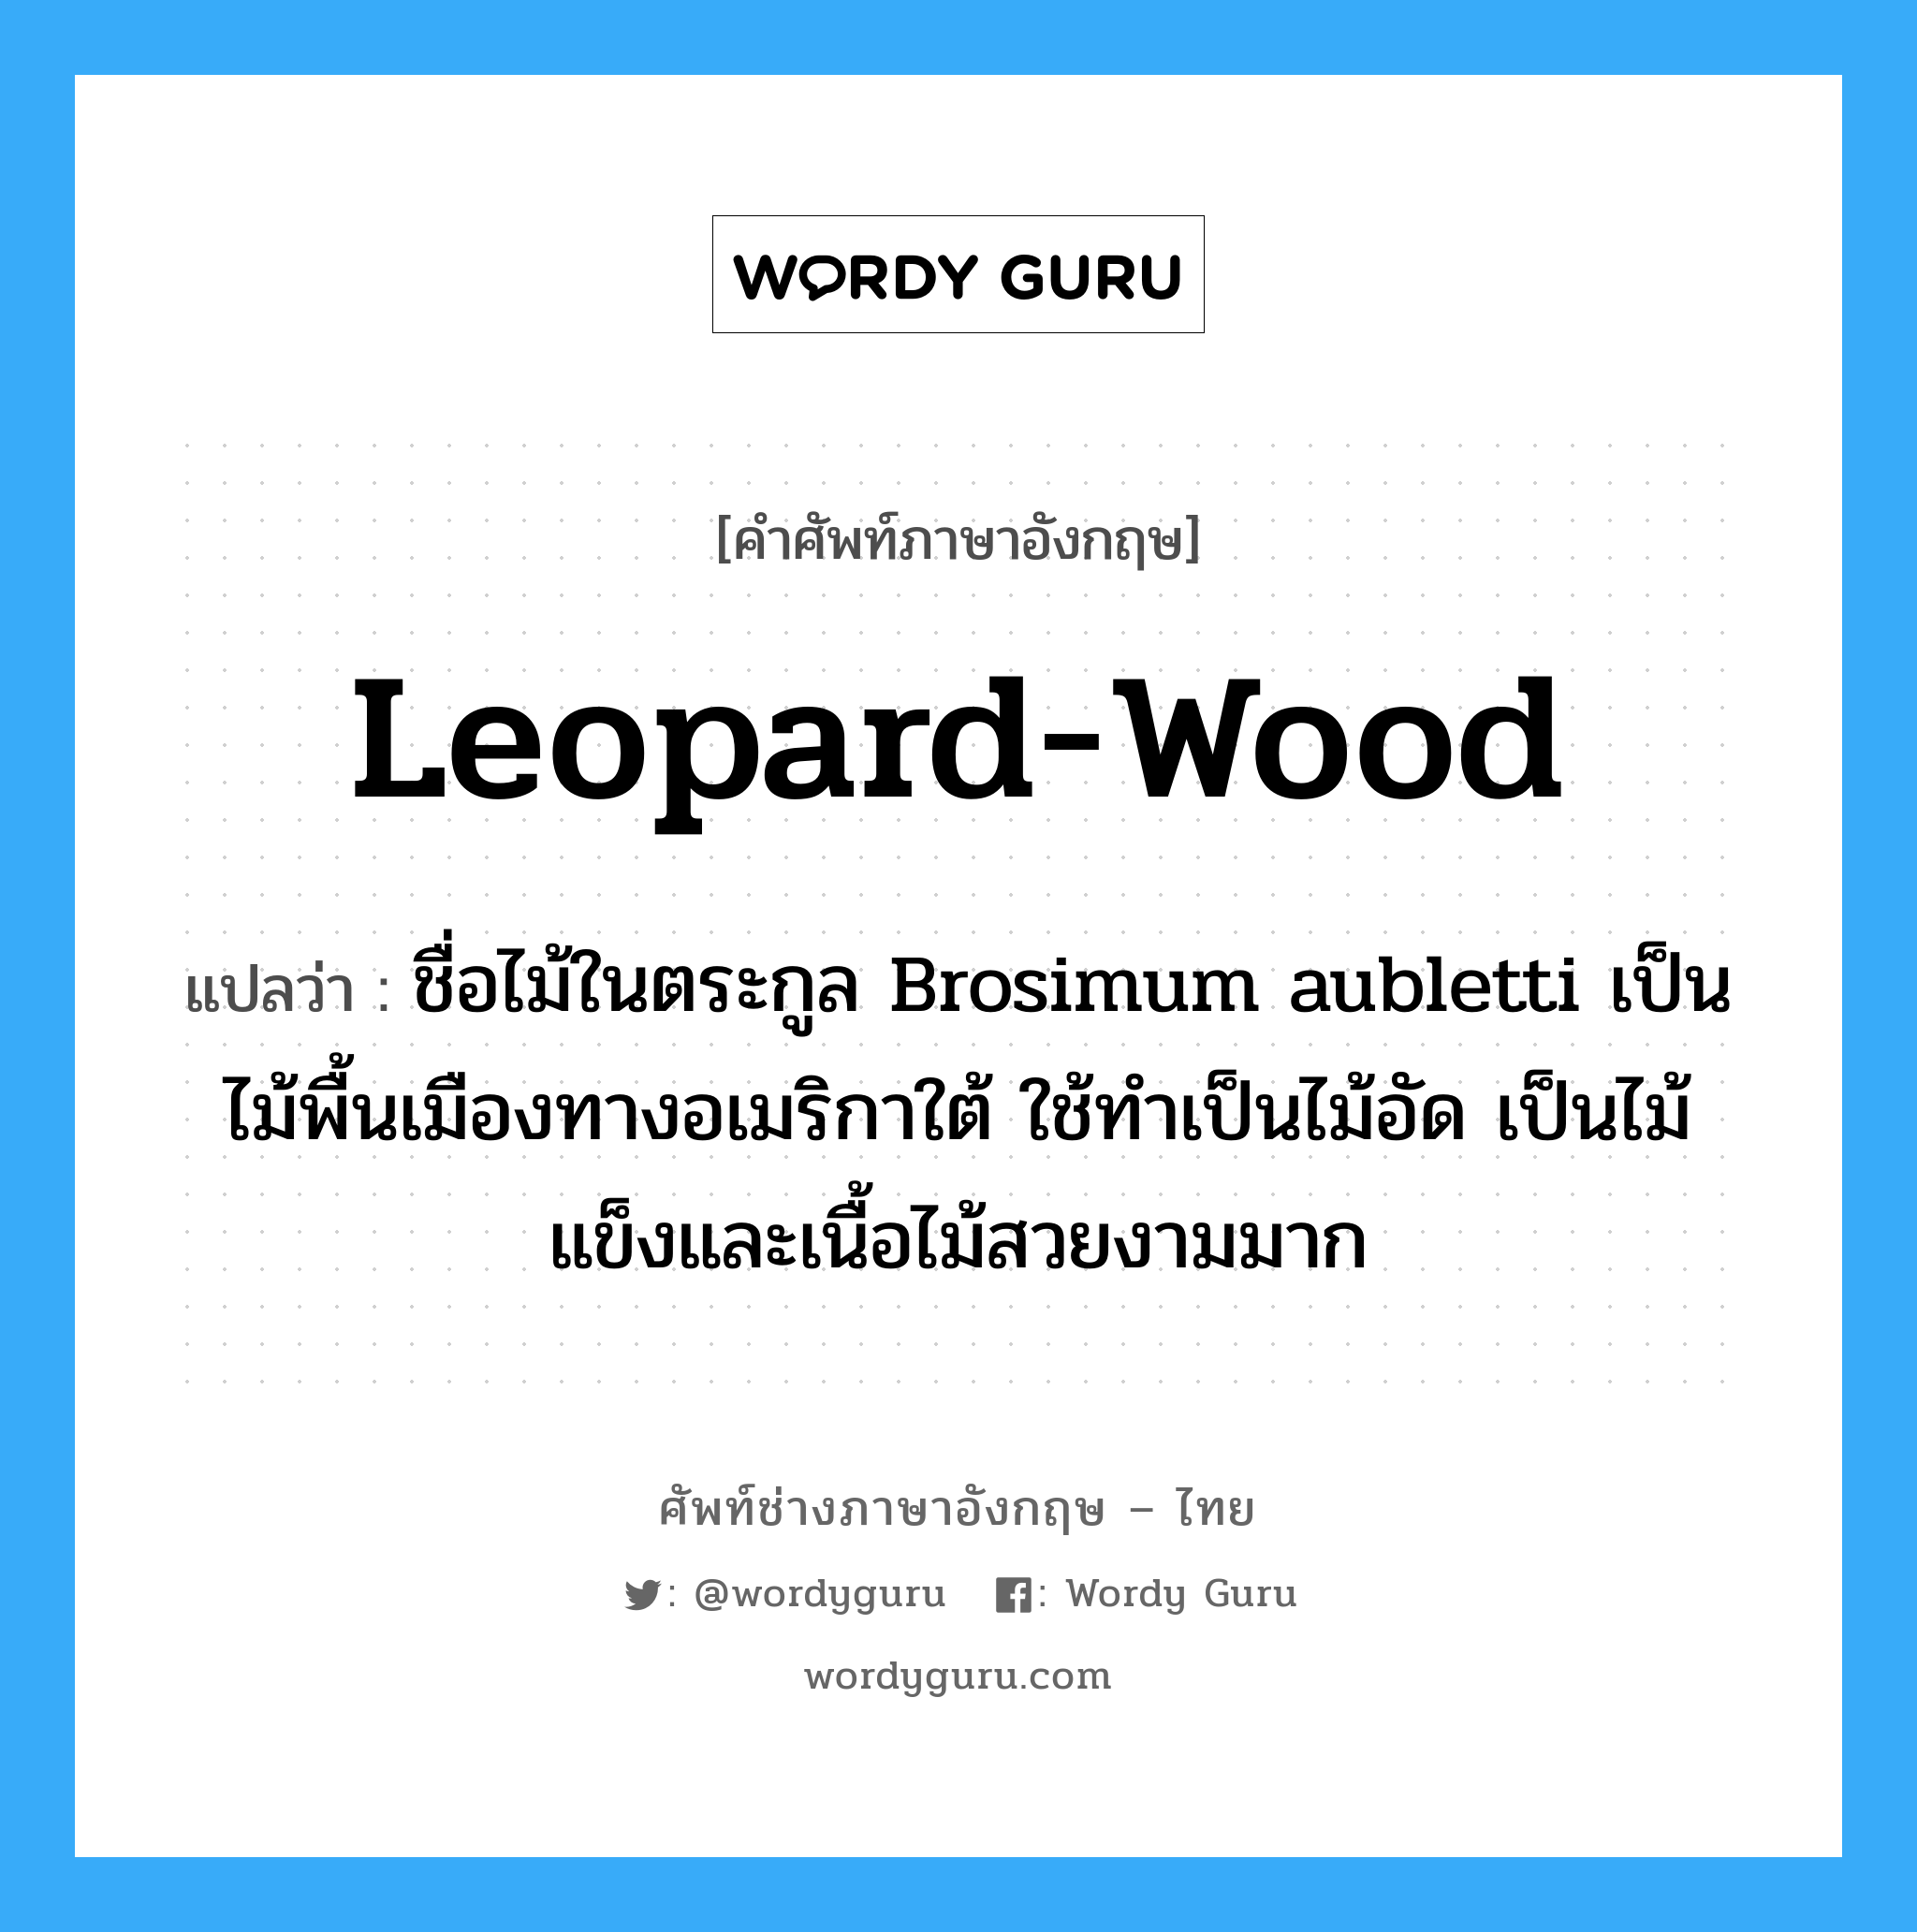 leopard-wood แปลว่า?, คำศัพท์ช่างภาษาอังกฤษ - ไทย leopard-wood คำศัพท์ภาษาอังกฤษ leopard-wood แปลว่า ชื่อไม้ในตระกูล Brosimum aubletti เป็นไม้พื้นเมืองทางอเมริกาใต้ ใช้ทำเป็นไม้อัด เป็นไม้แข็งและเนื้อไม้สวยงามมาก